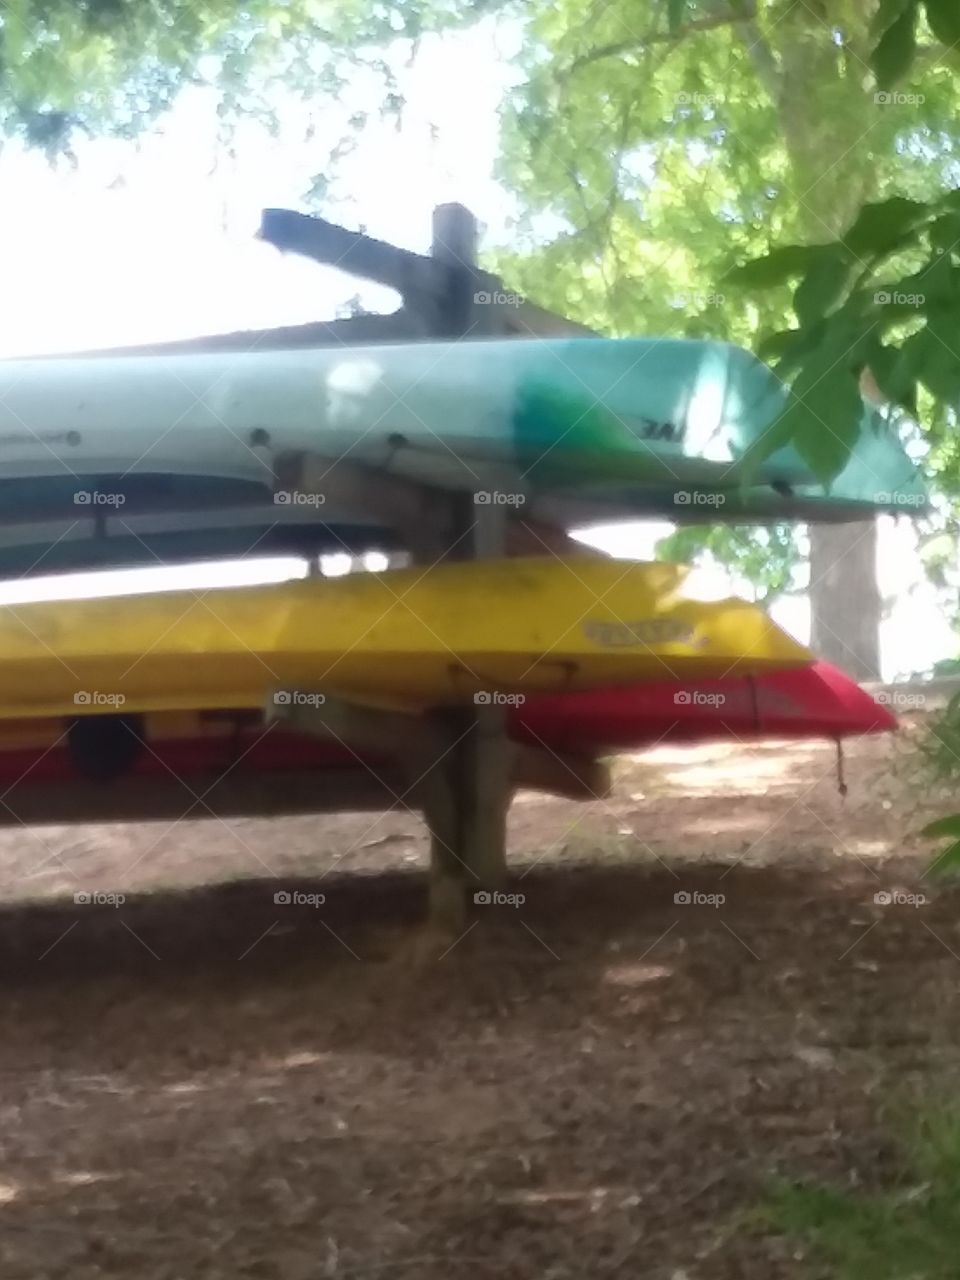 canoes at the lake